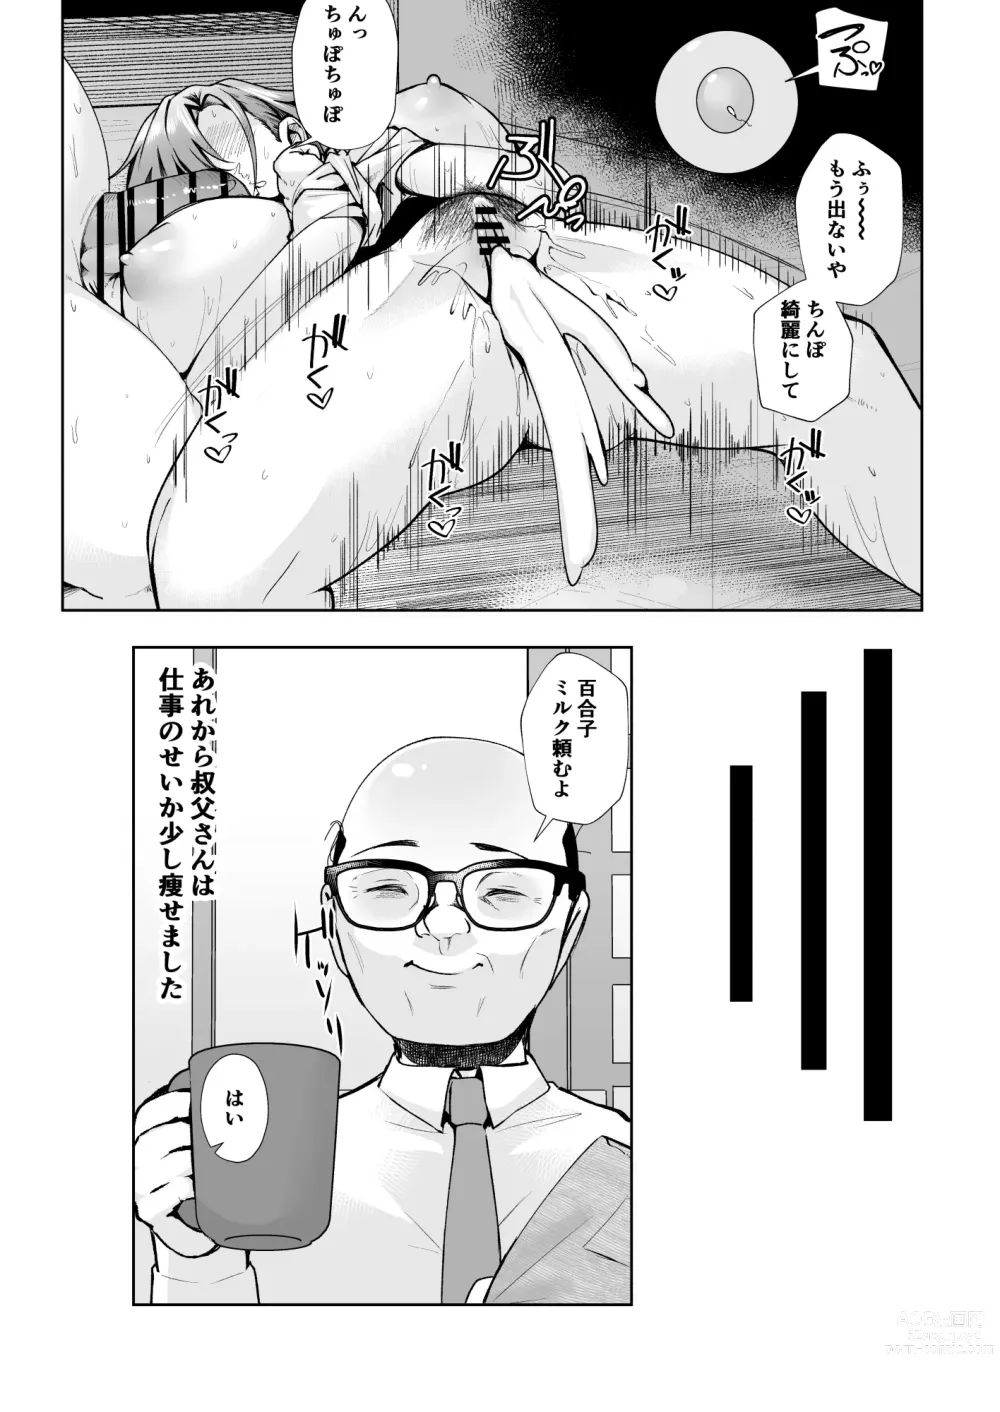 Page 37 of doujinshi Ojisanga shakinwo tsumano karadade hotenshitehoshiito iwaretanode kaidakushita hanashi